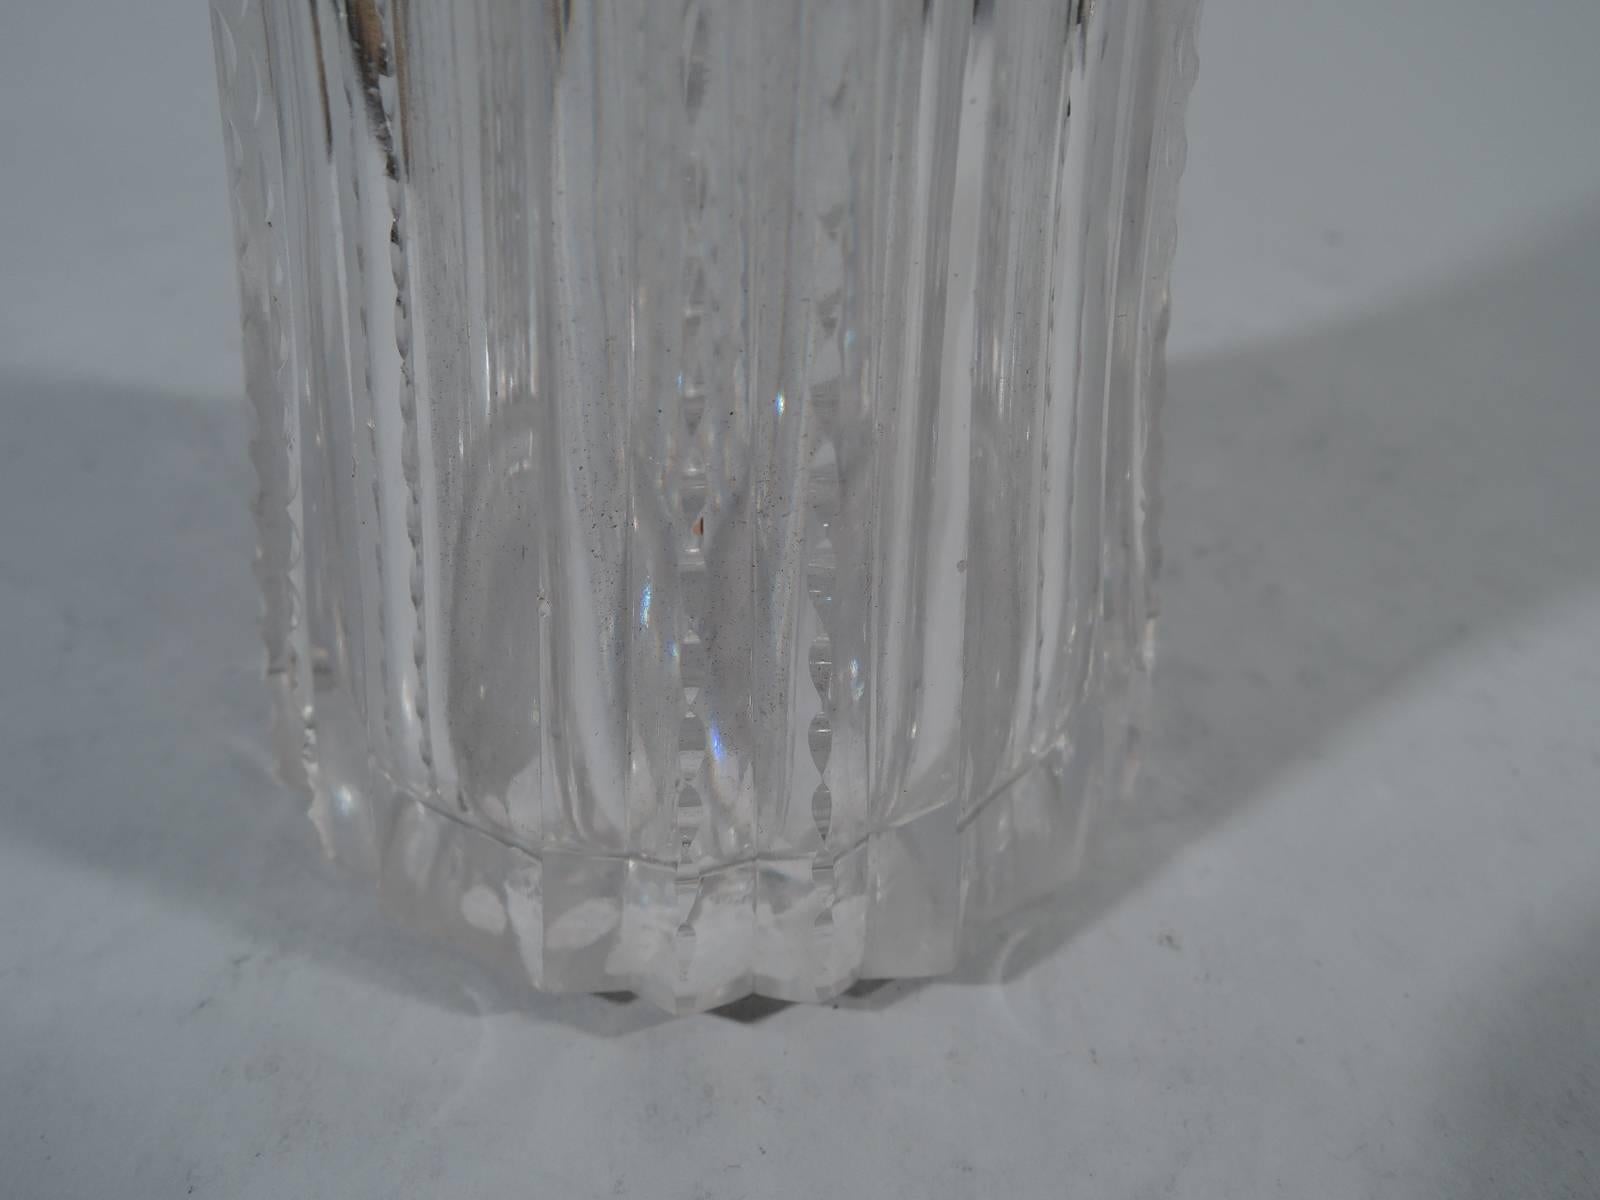 tiffany silver vase